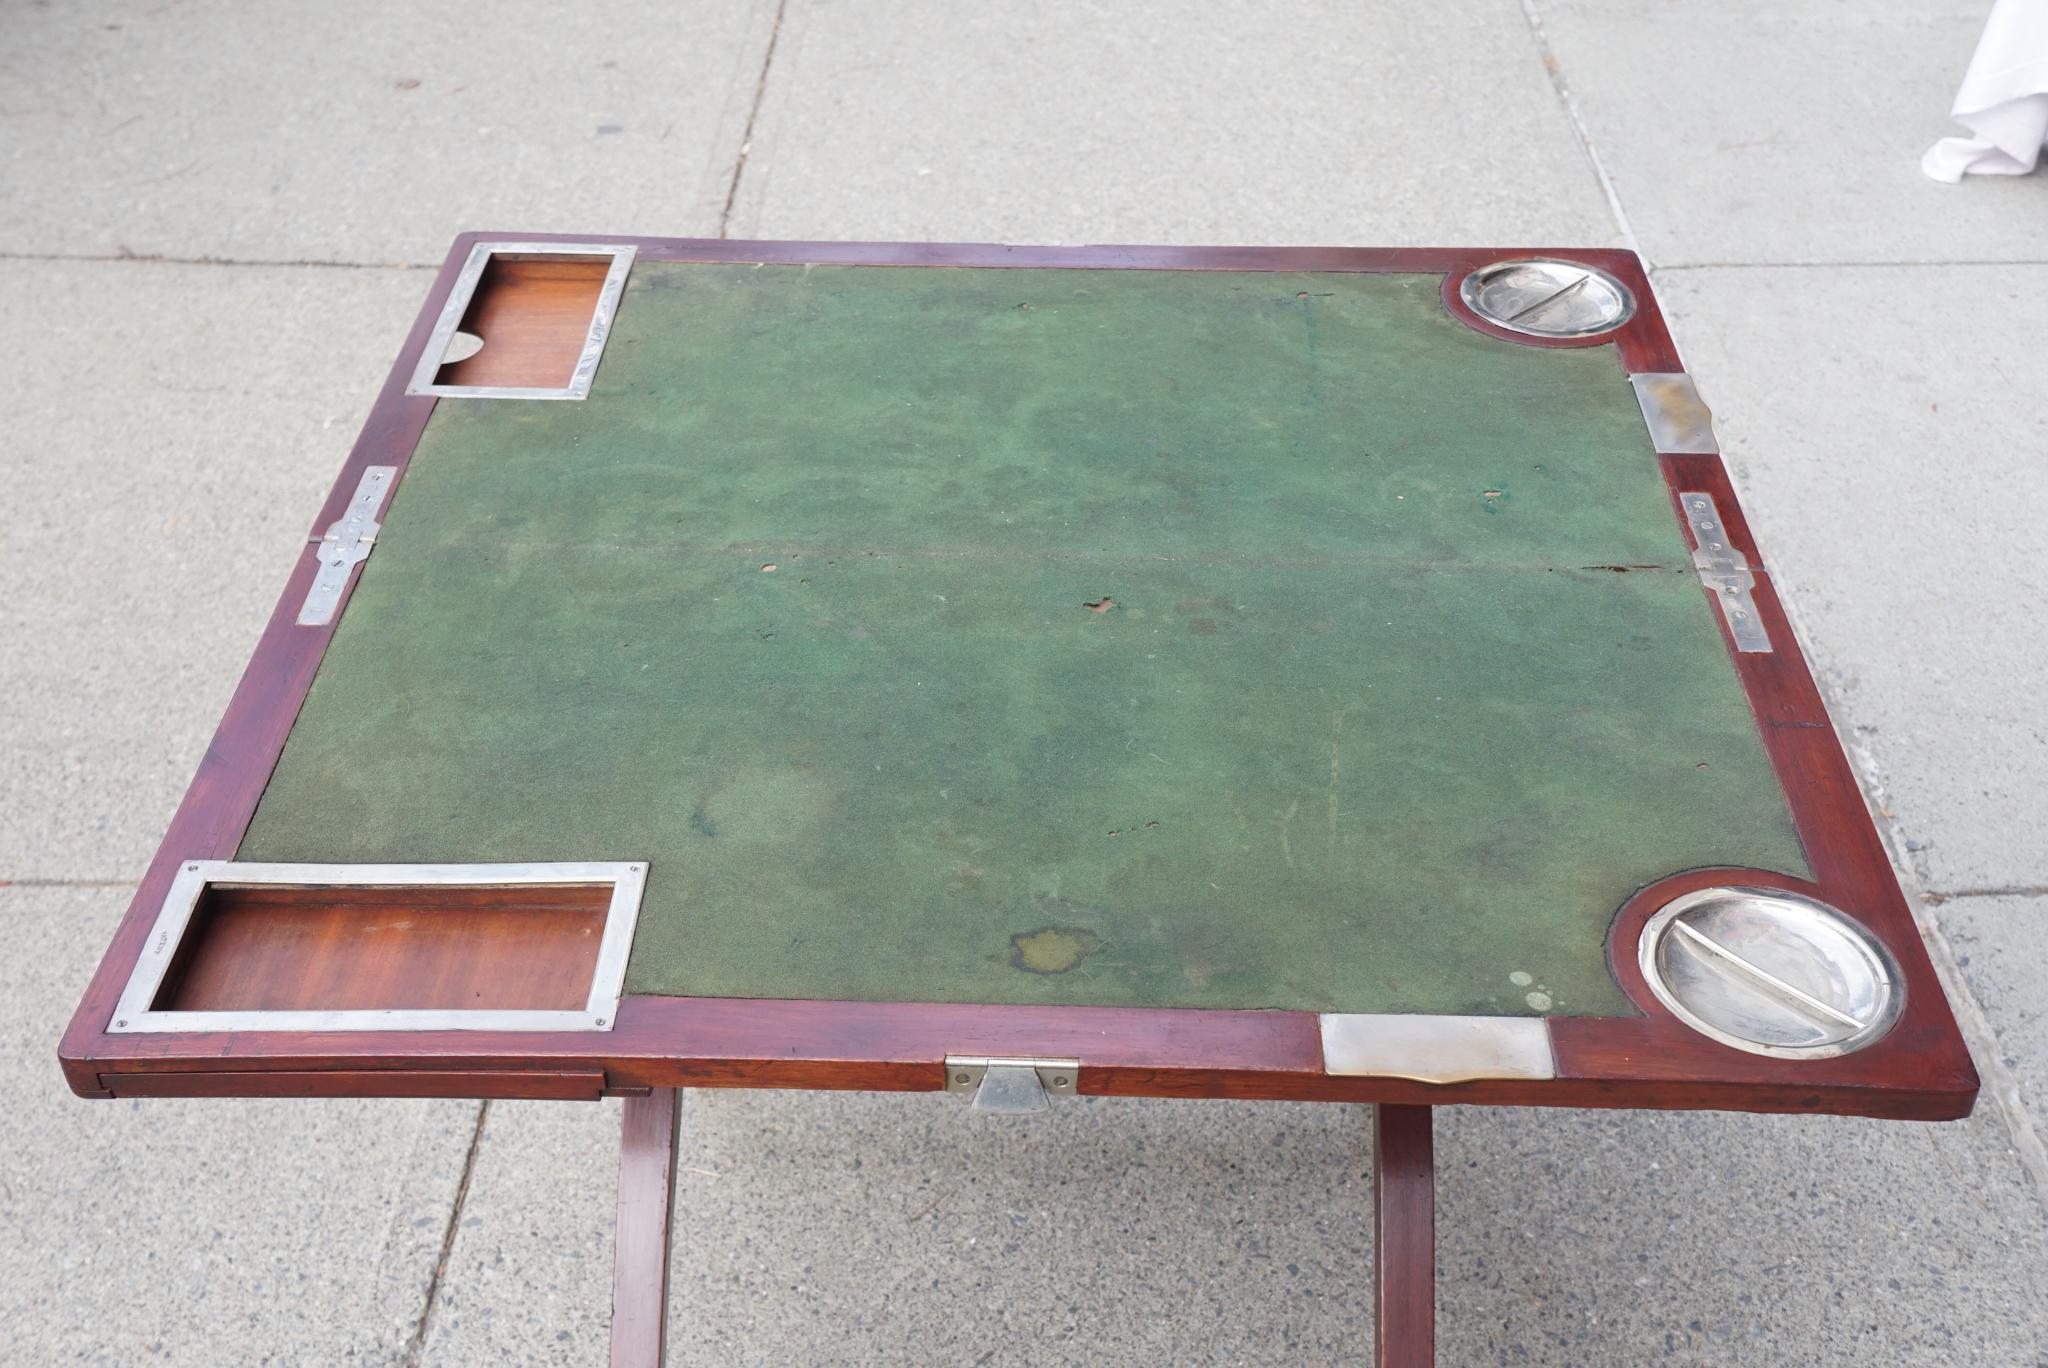 Dieser schöne und ungewöhnliche Spieltisch ist von seltener Form, ca. 1900 und 1910, ist aus Mahagoni und Deal Secondaries. Die Messingbeschläge sind alle verchromt, was sonst nur bei Bootszubehör der Fall ist. Der Tisch lässt sich in geschlossenem